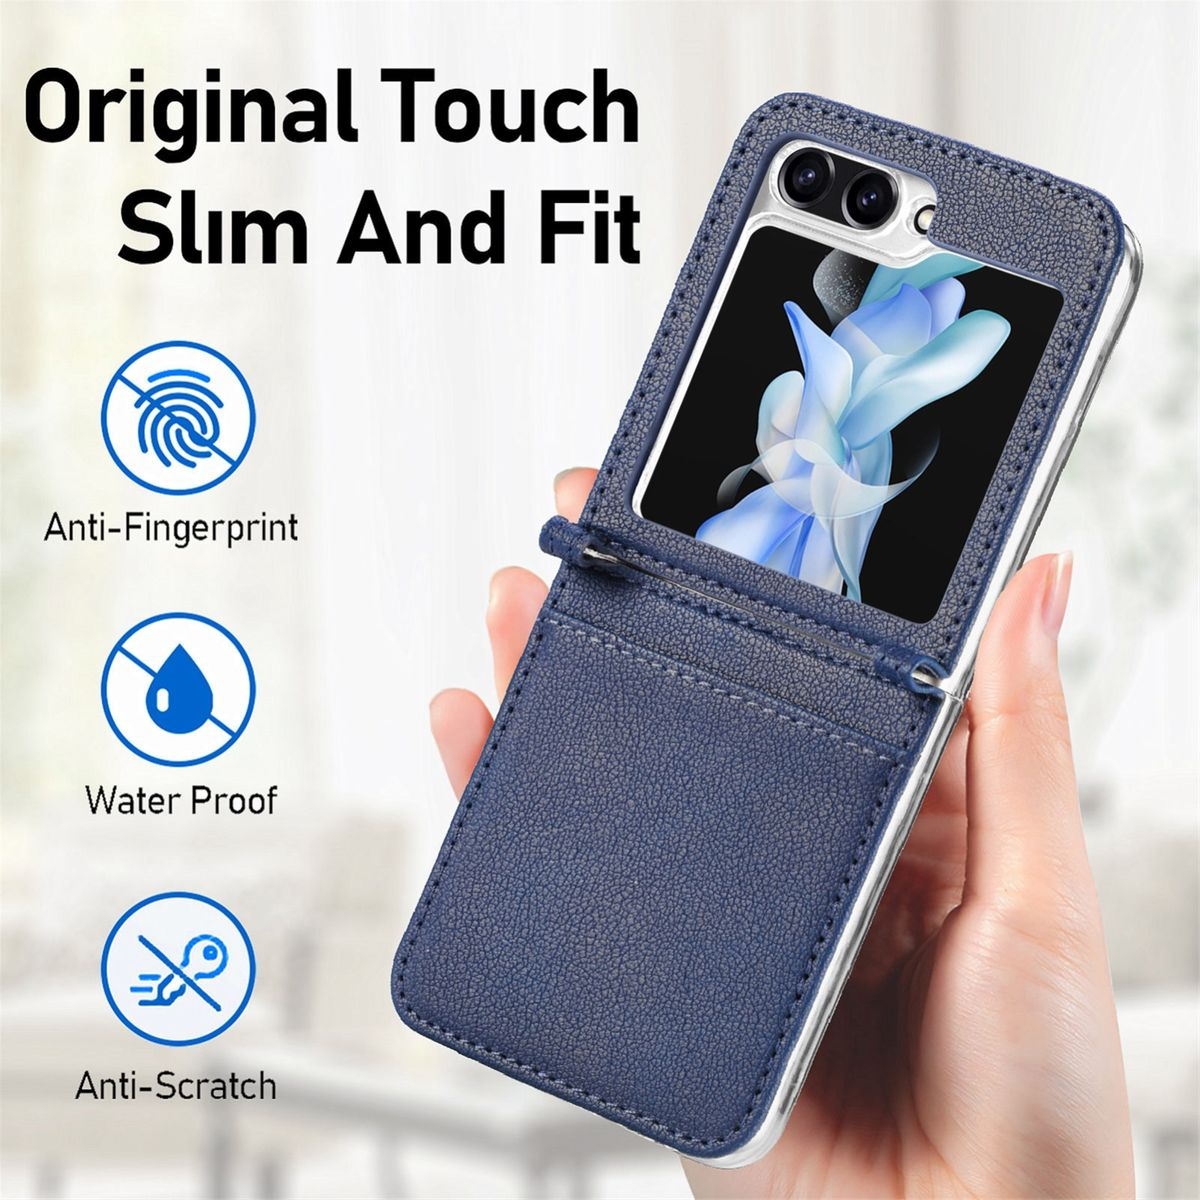 KÖNIG DESIGN Blau Case, Samsung, 5G, Flip5 Z Galaxy Backcover